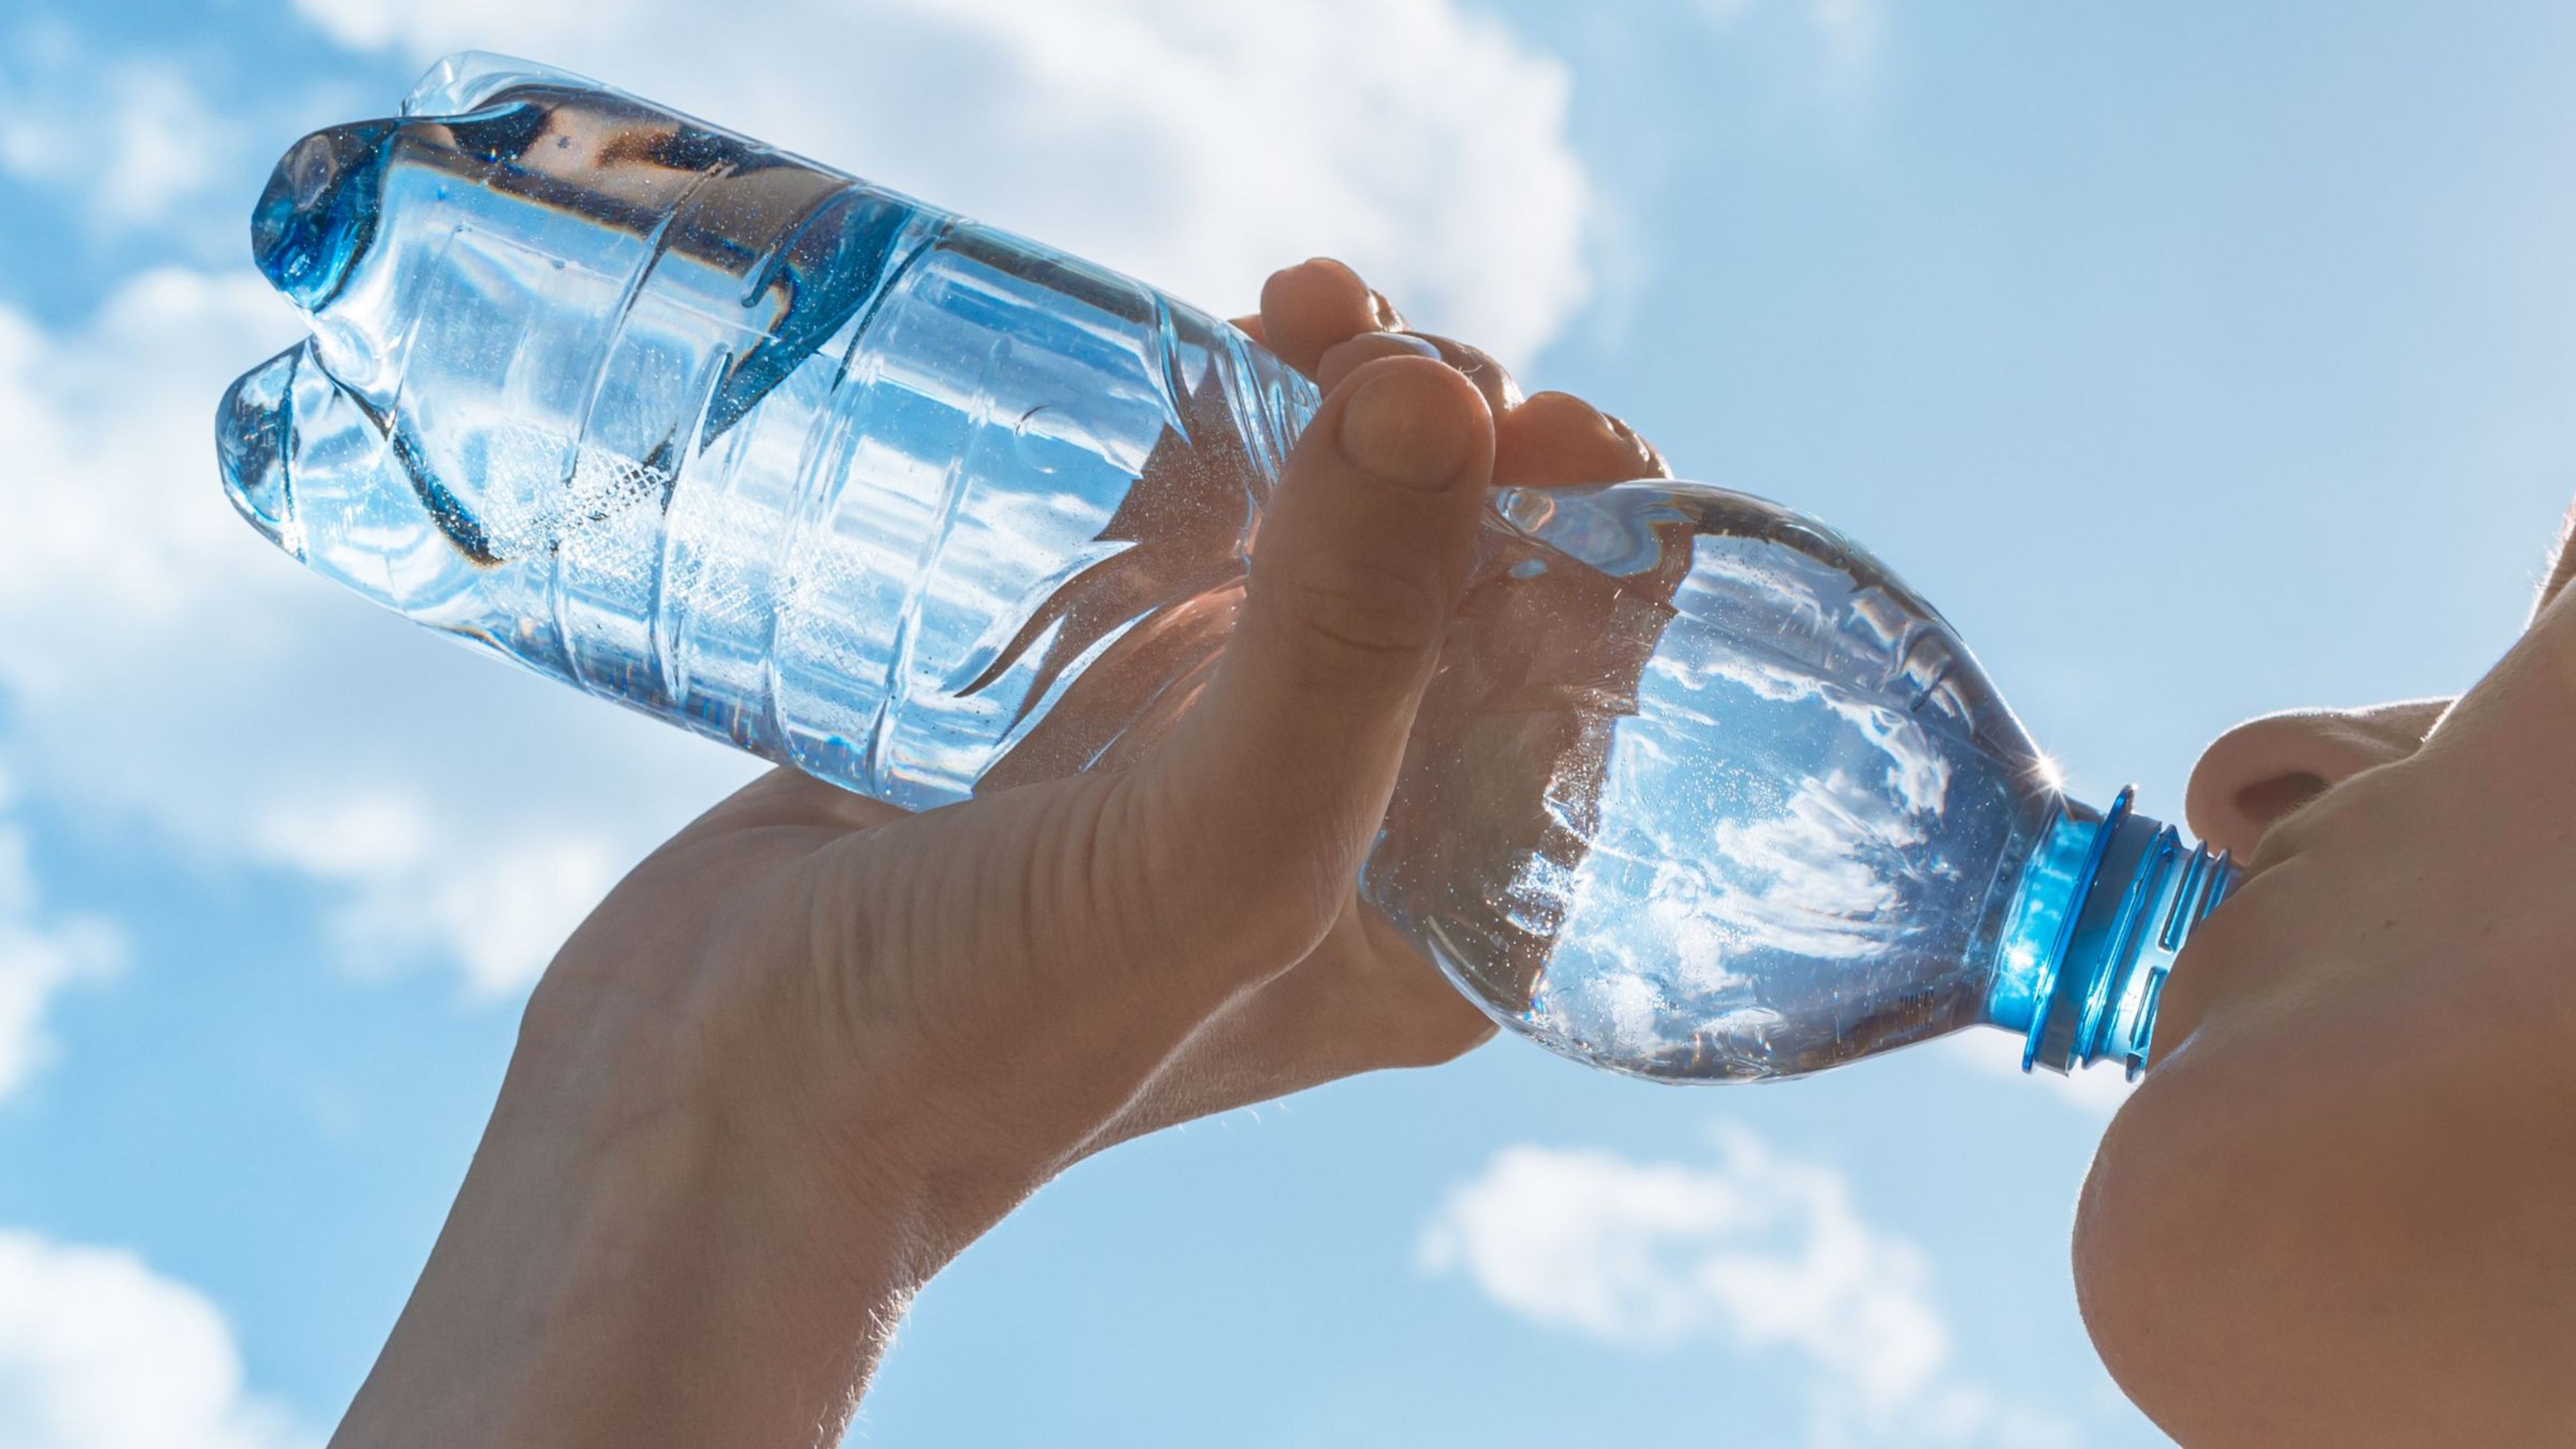 Beber agua de una botella significa ingerir cientos de nano-plásticos dañinos para la salud